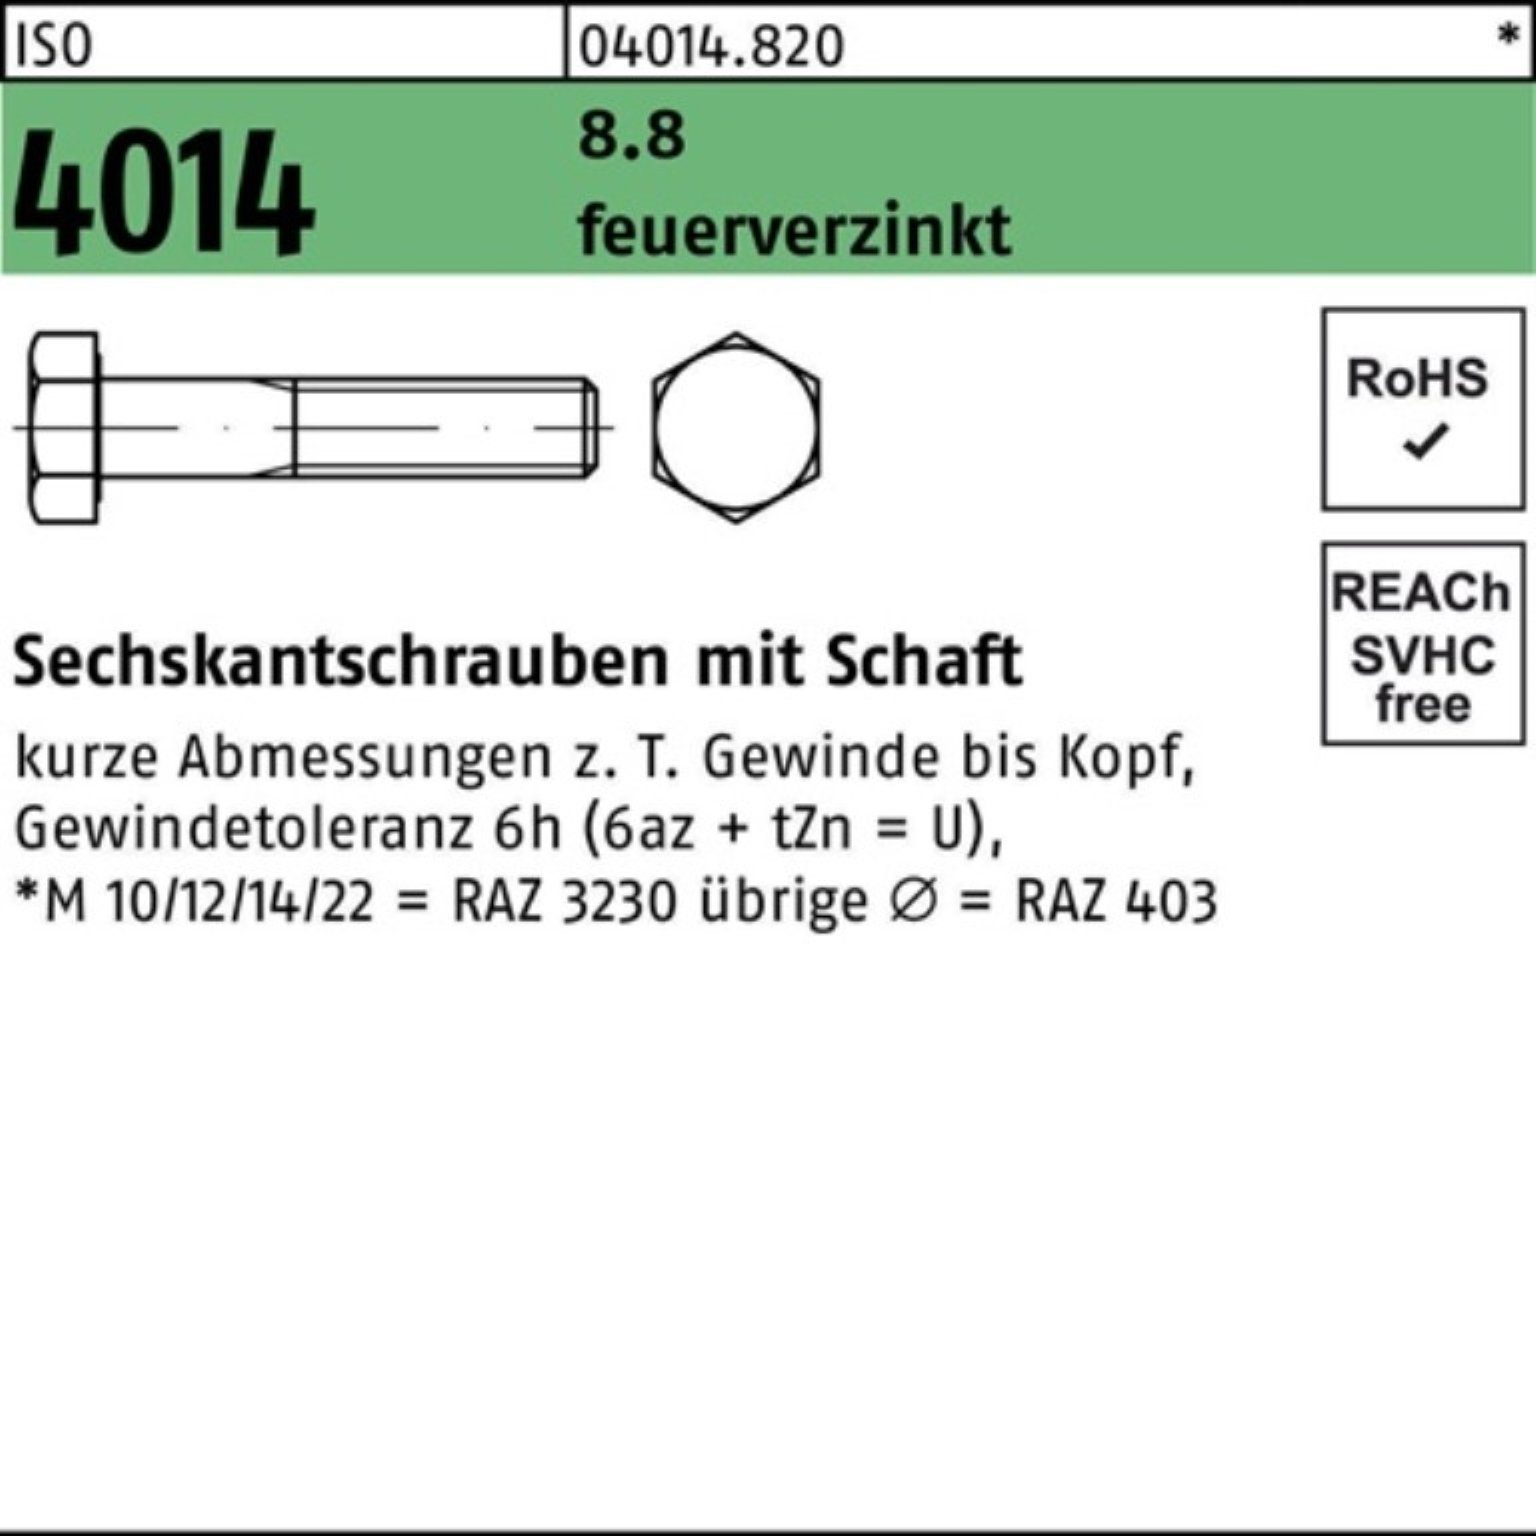 Bufab Sechskantschraube 100er Pack Sechskantschraube ISO 4014 Schaft M12x 55 8.8 feuerverz. 10